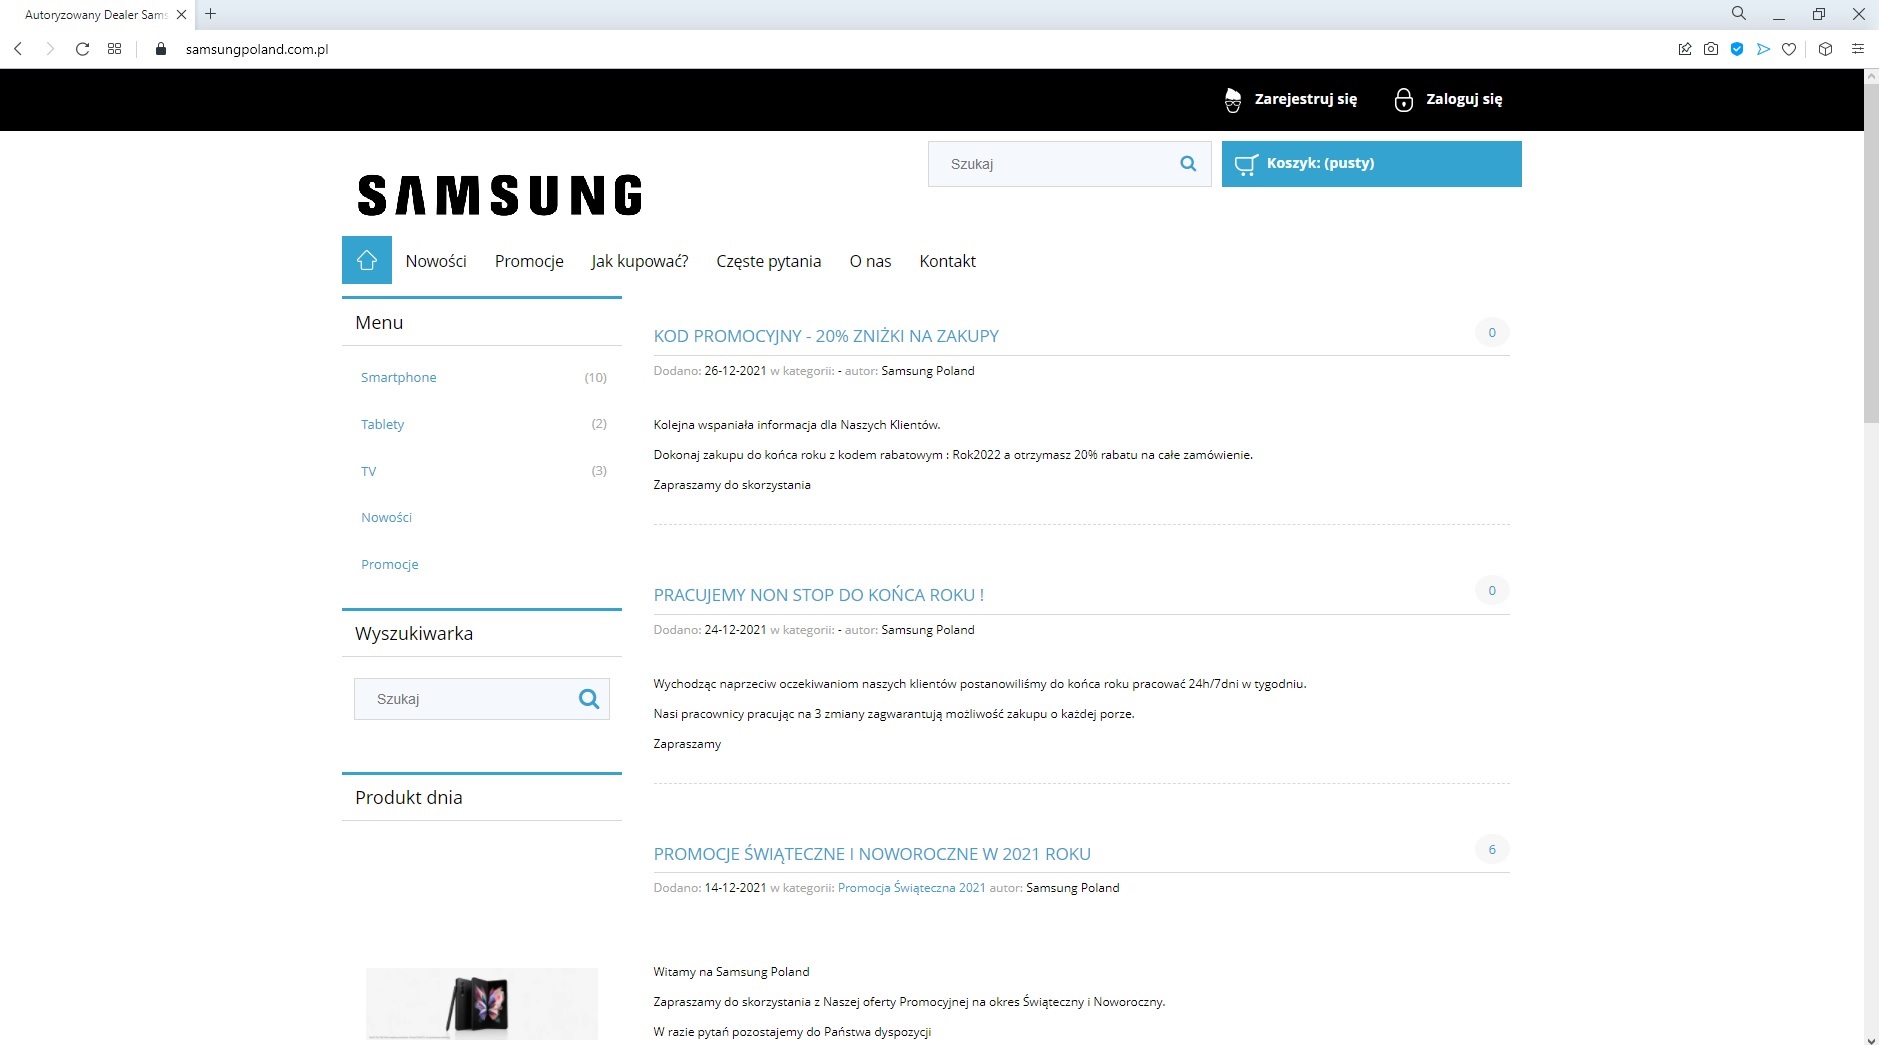 samsungpoland.com.pl to nie jest oficjalny autoryzowany sklep Samsunga